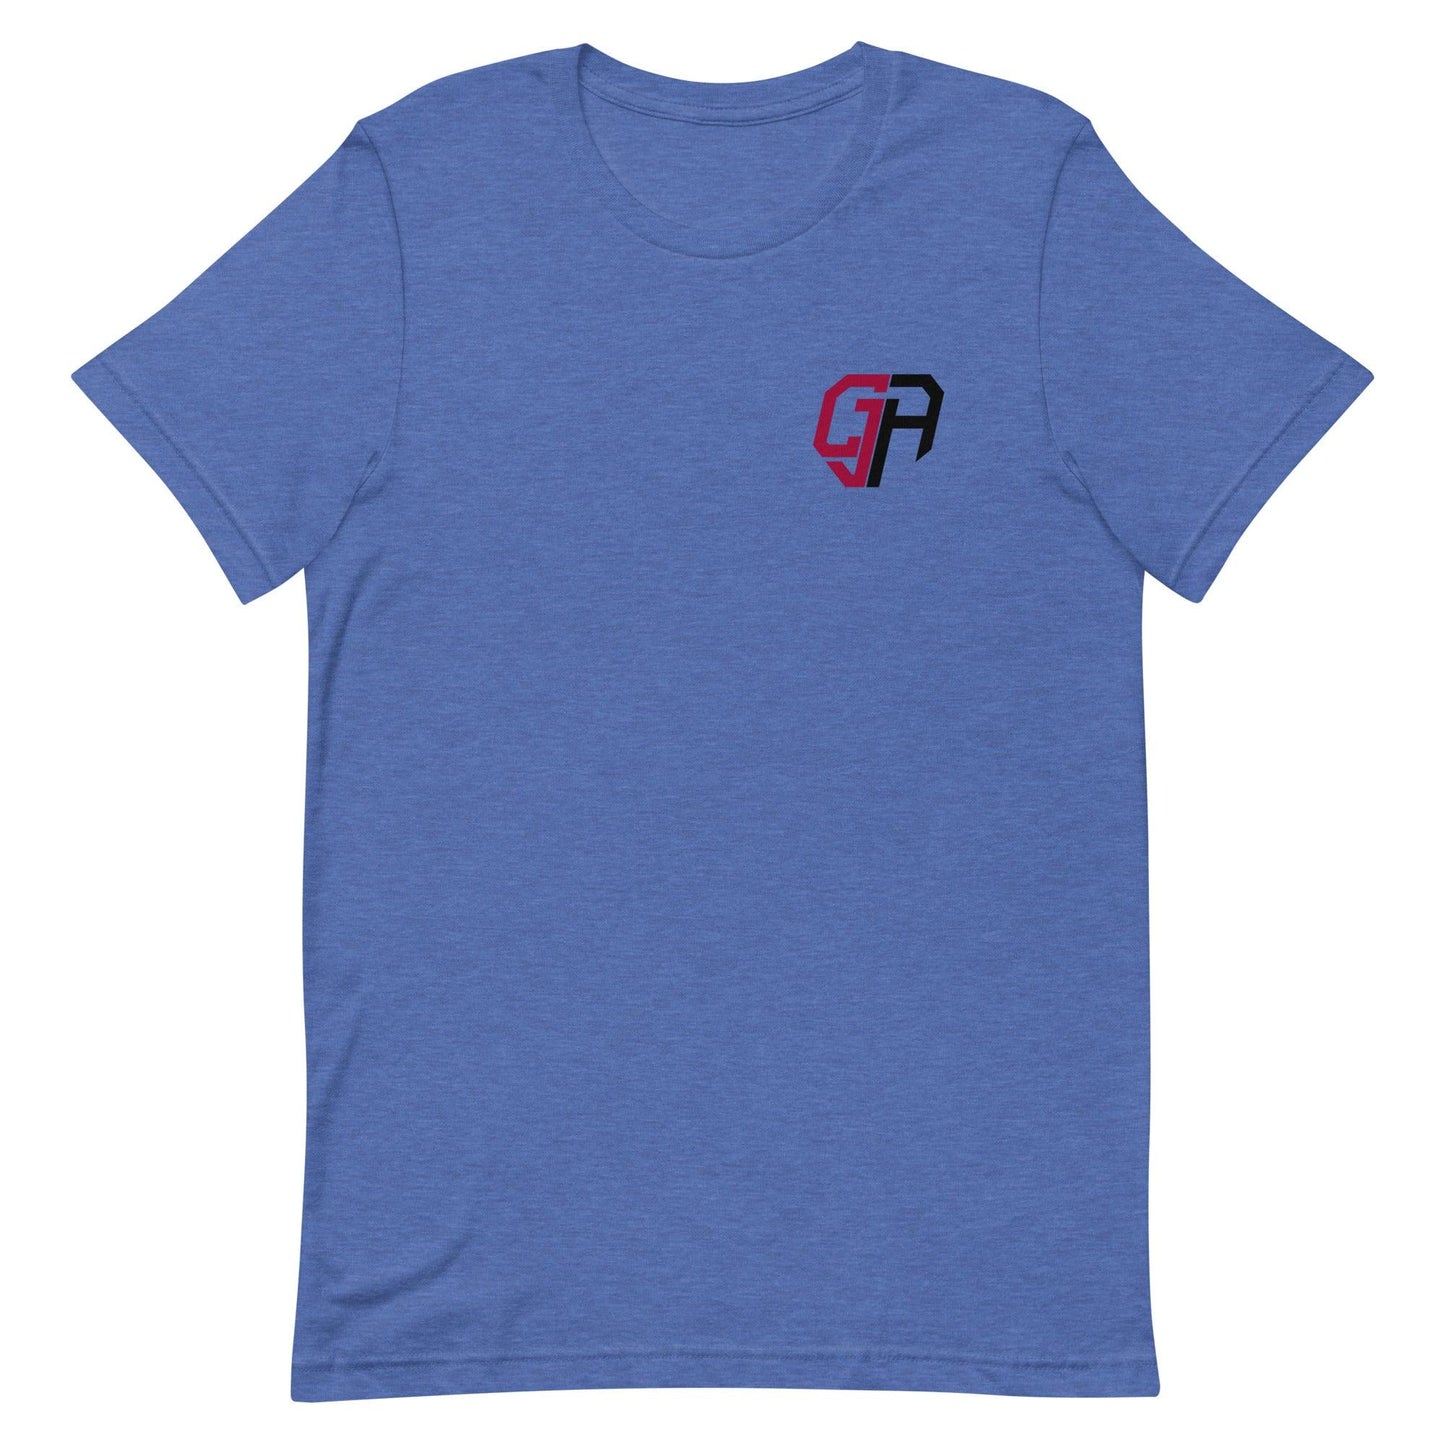 CJ Adams "Essential" t-shirt - Fan Arch